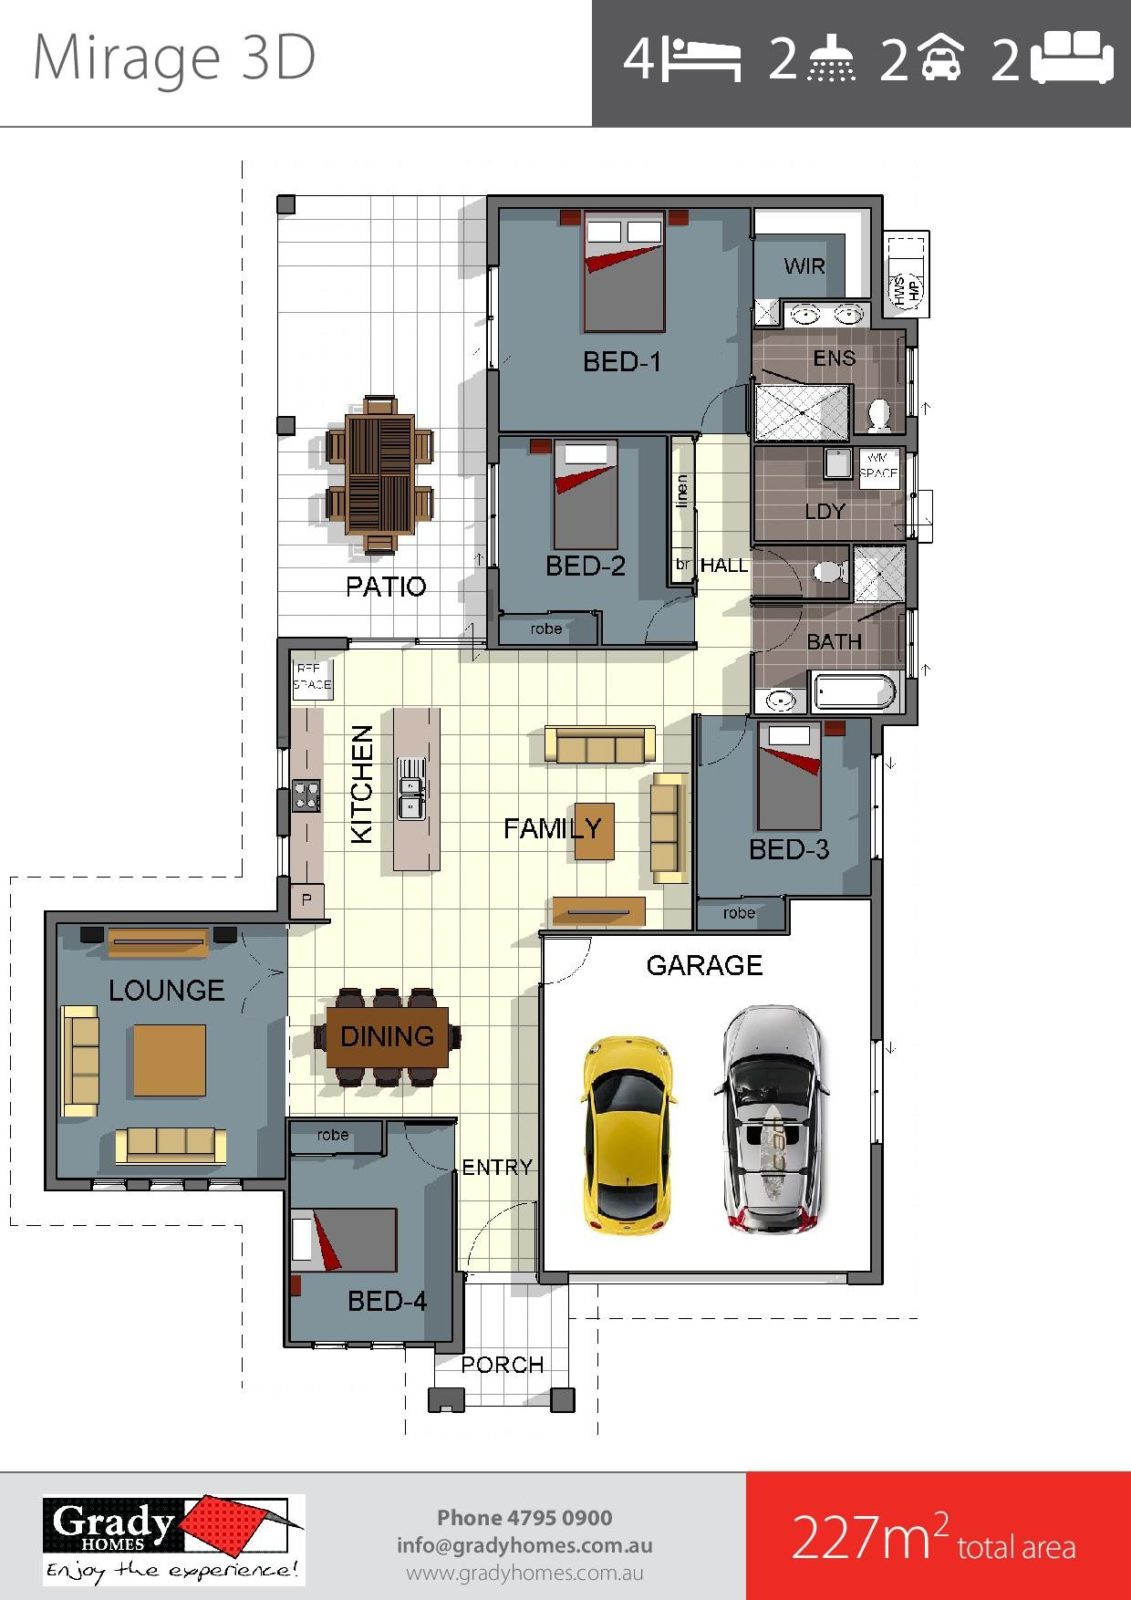 mirage-3d-grady-homes-floor-plan-brochure-2